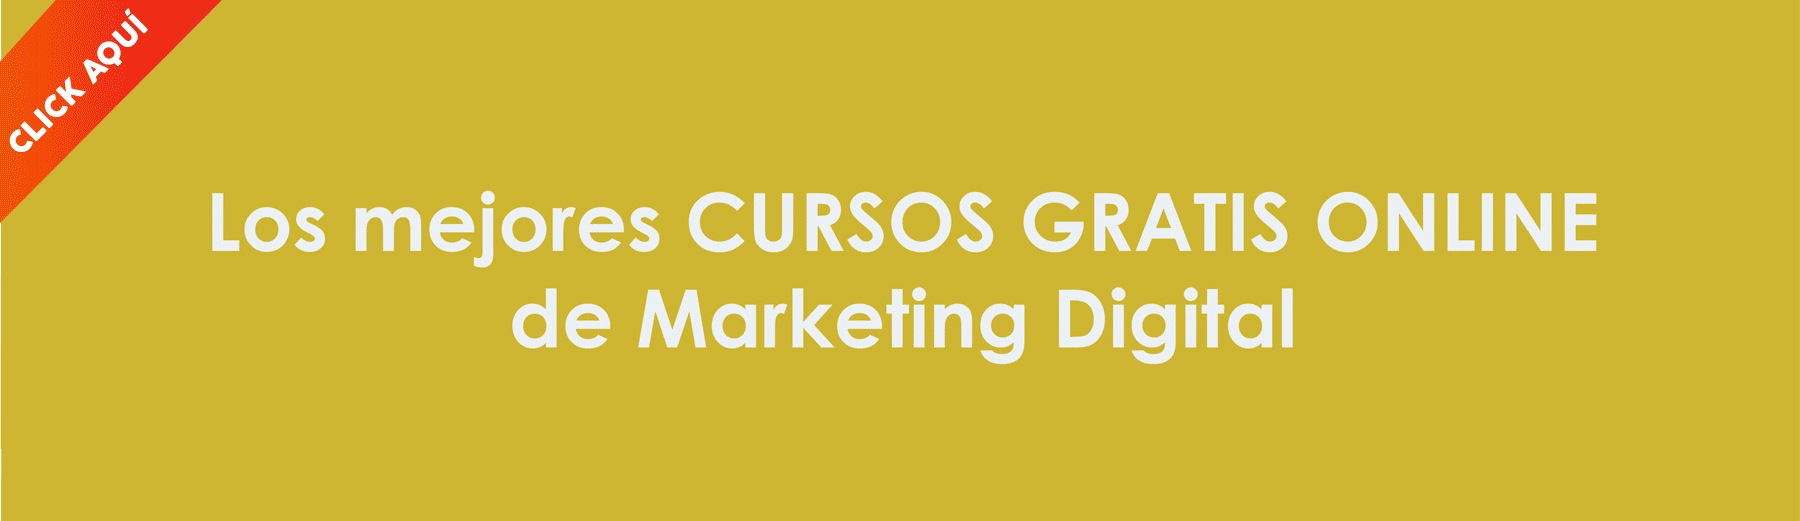 Los mejores cursos gratis online de marketing digital